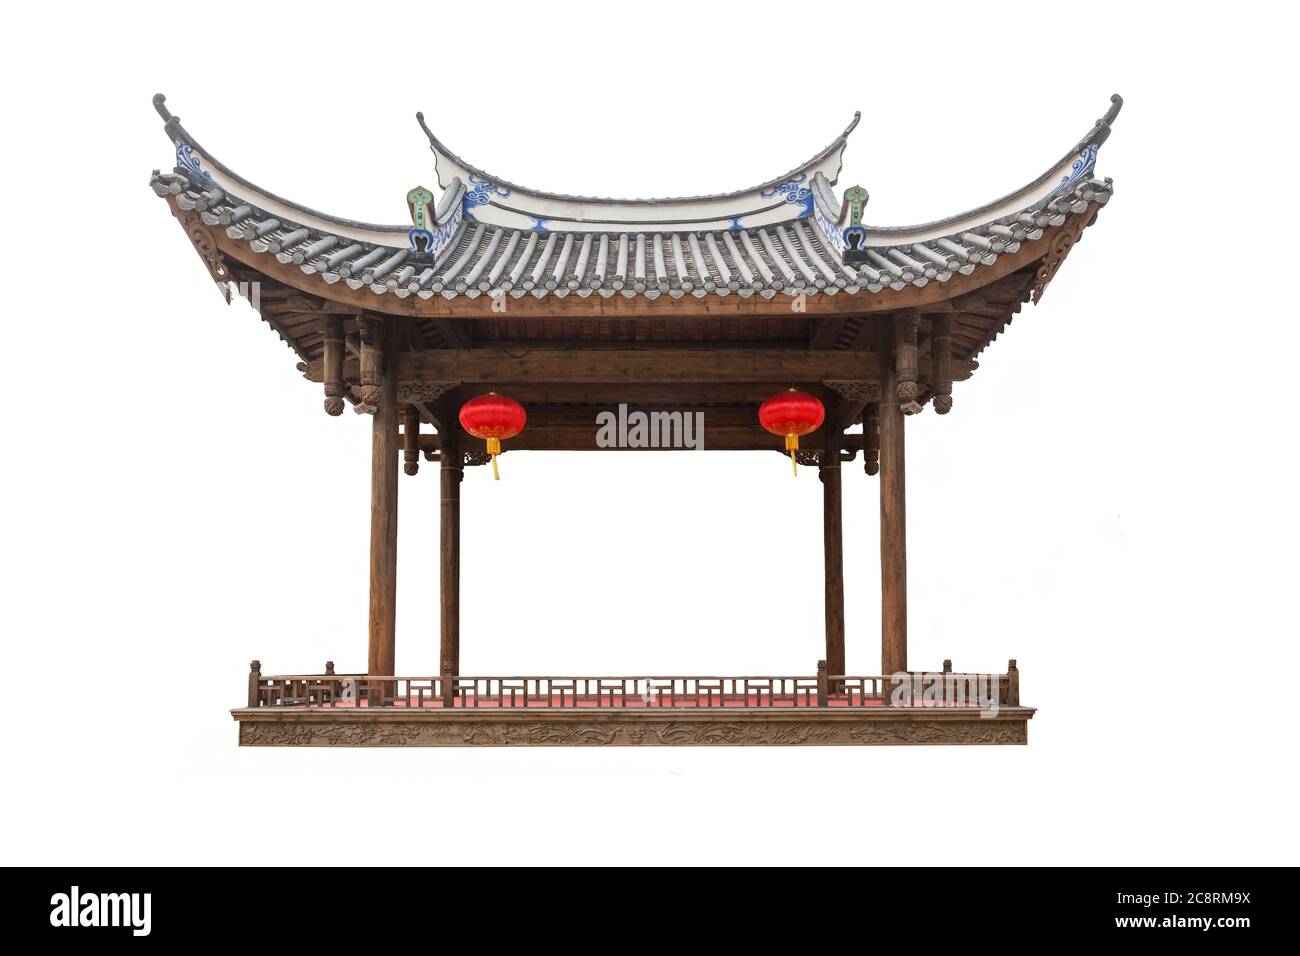 Pavillon traditionnel chinois ancien ou scène avec lanterne rouge suspendue isolée sur fond blanc Banque D'Images